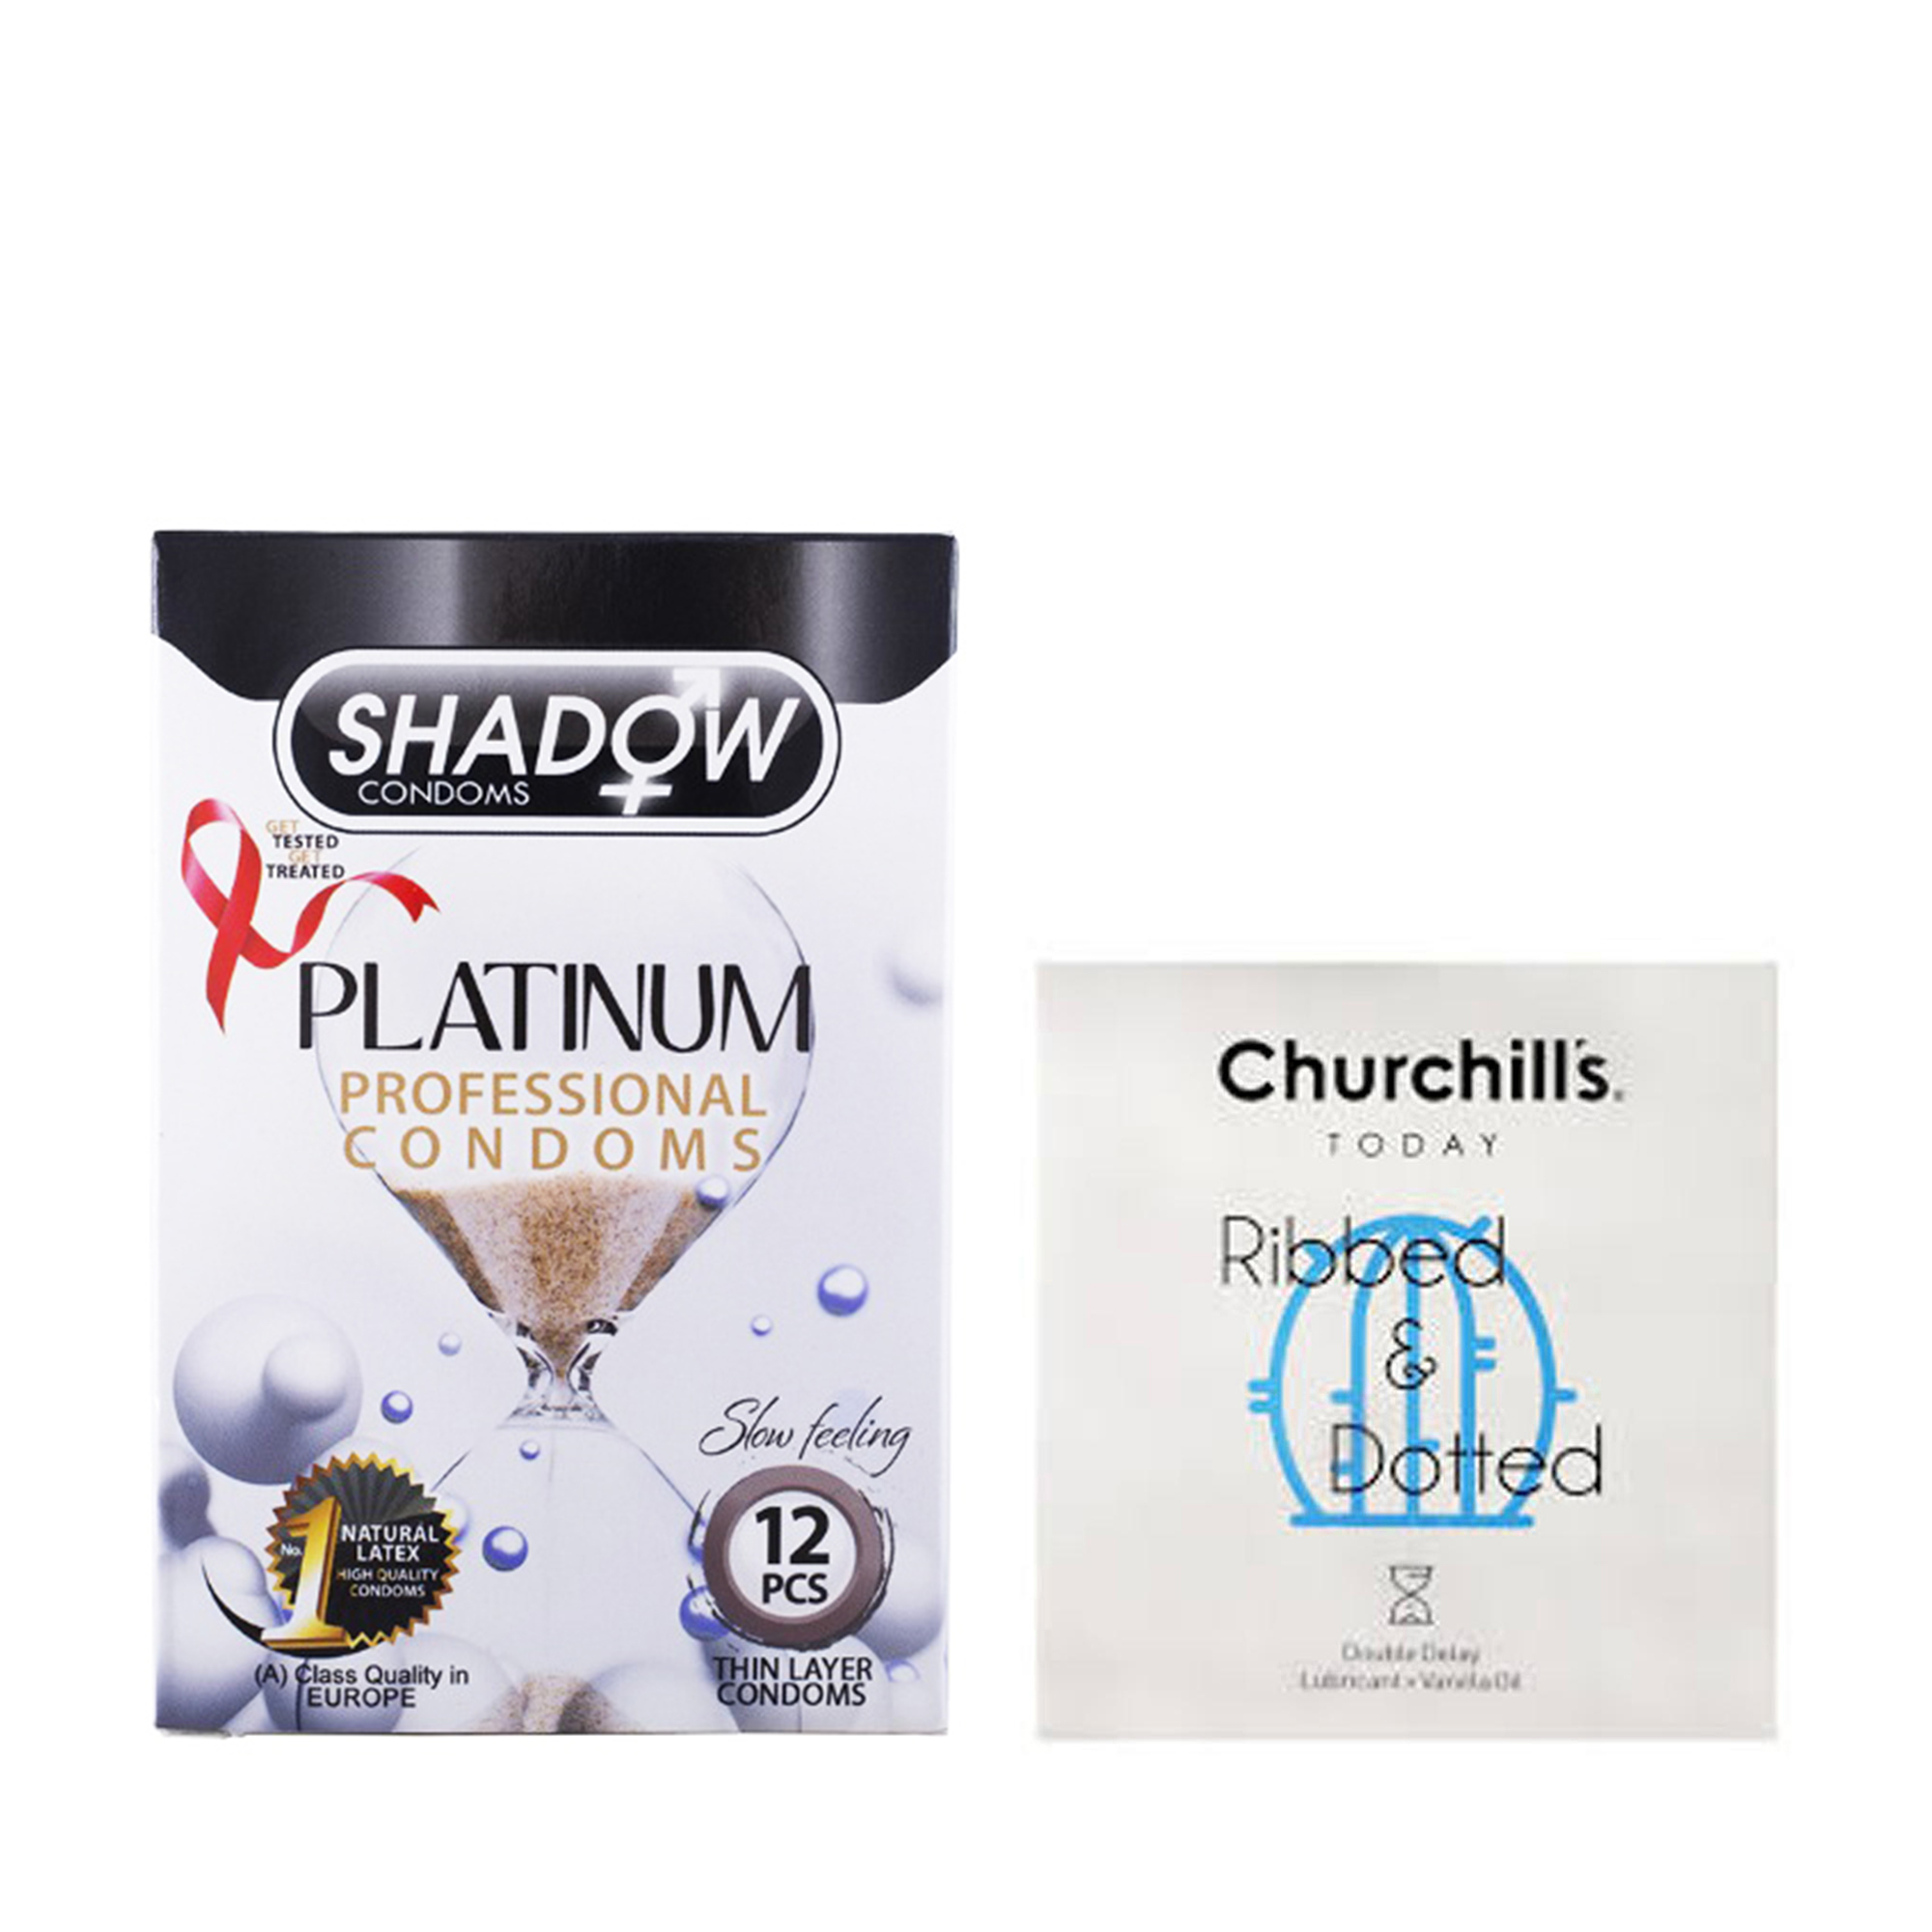 کاندوم چرچیلز مدل Ribbed and Dotted بسته 3 عددی به همراه کاندوم شادو مدل Platinum بسته 12 عددی